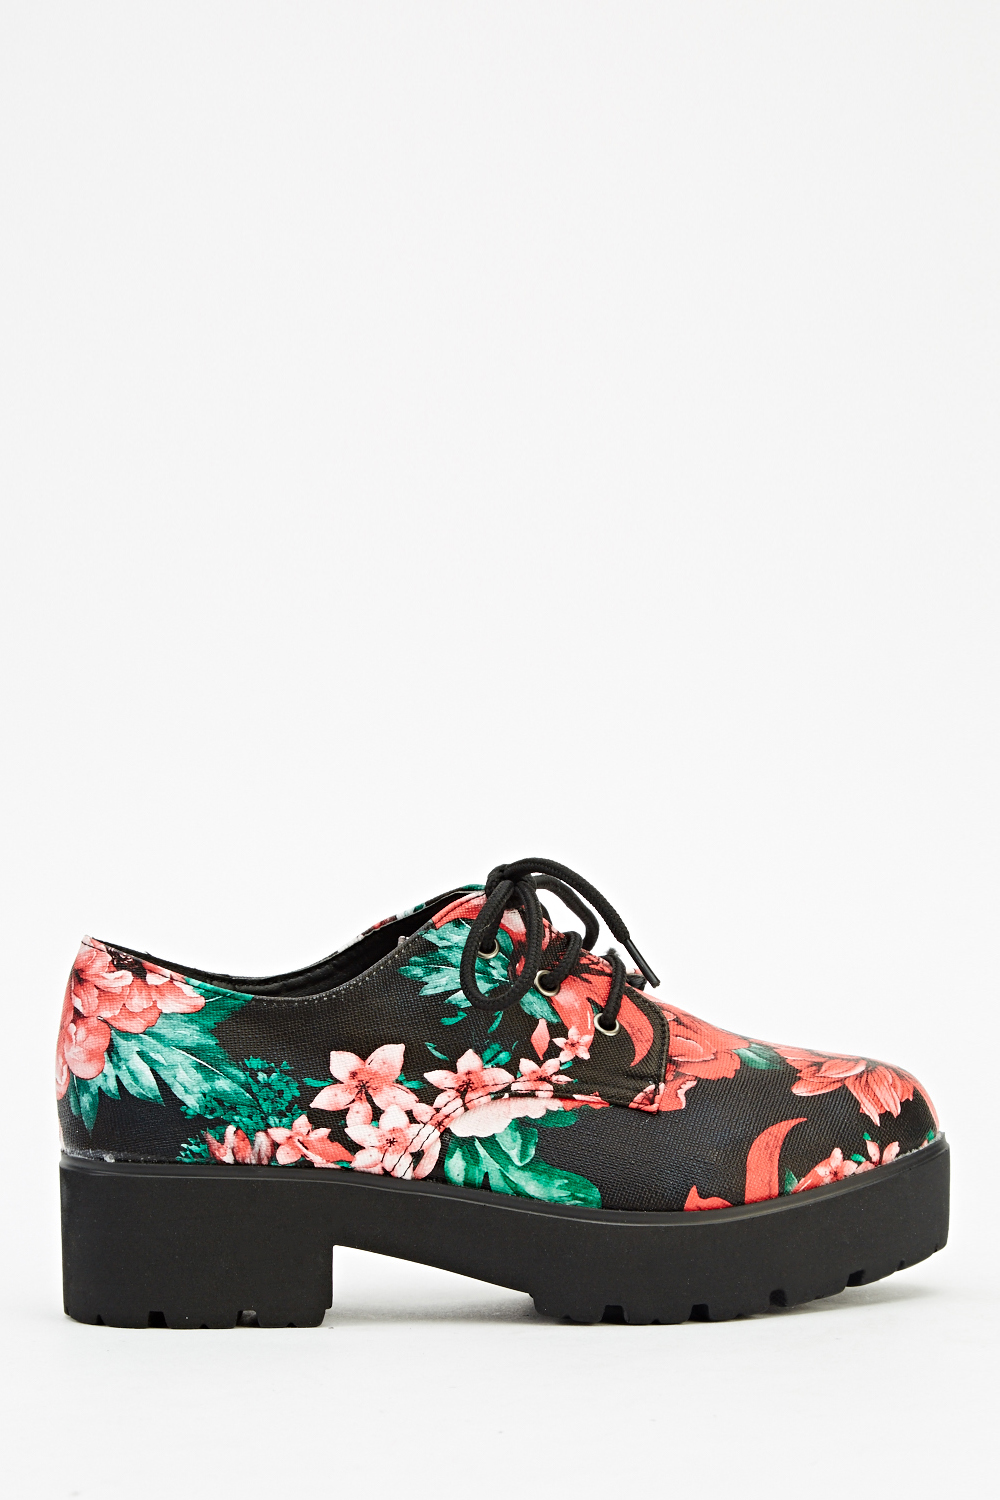 Flower Printed Platform Shoes - Just $7